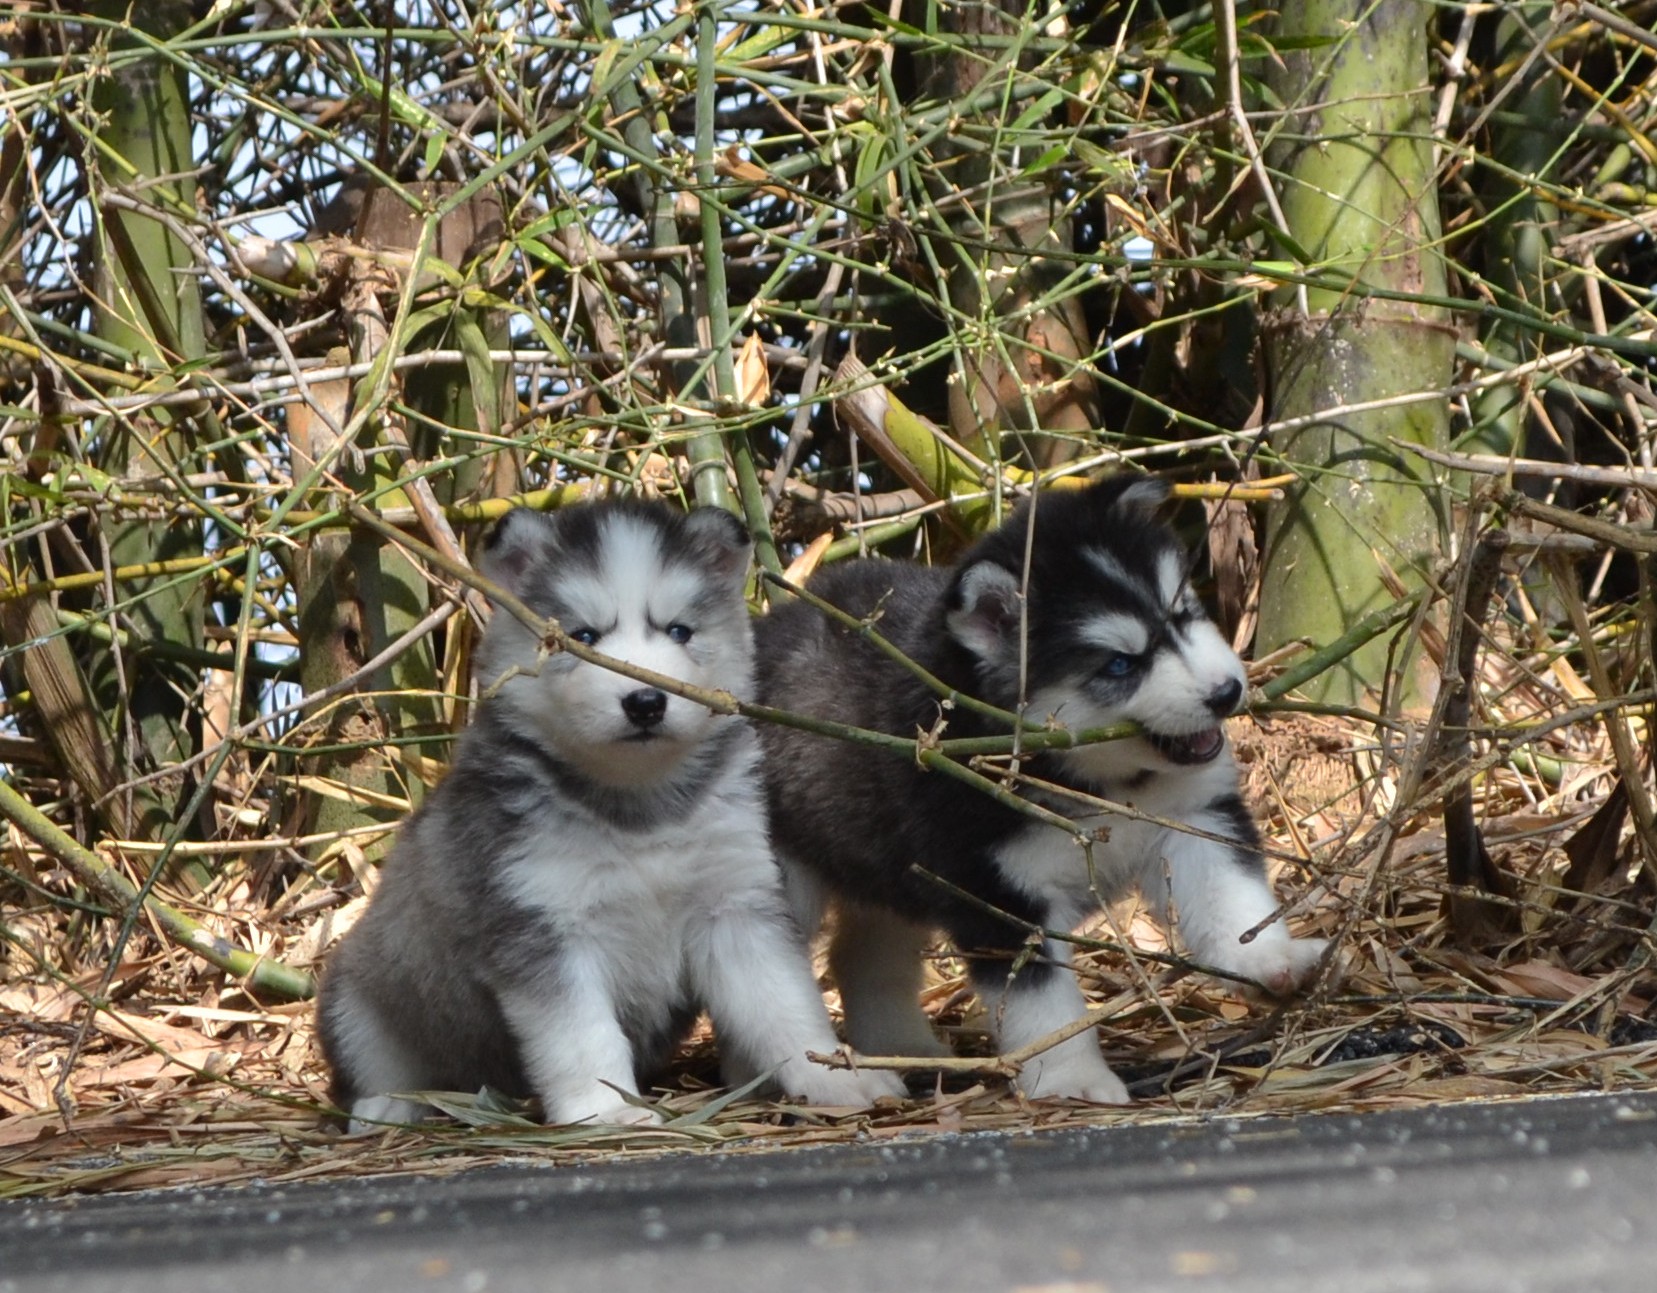 Husky babies